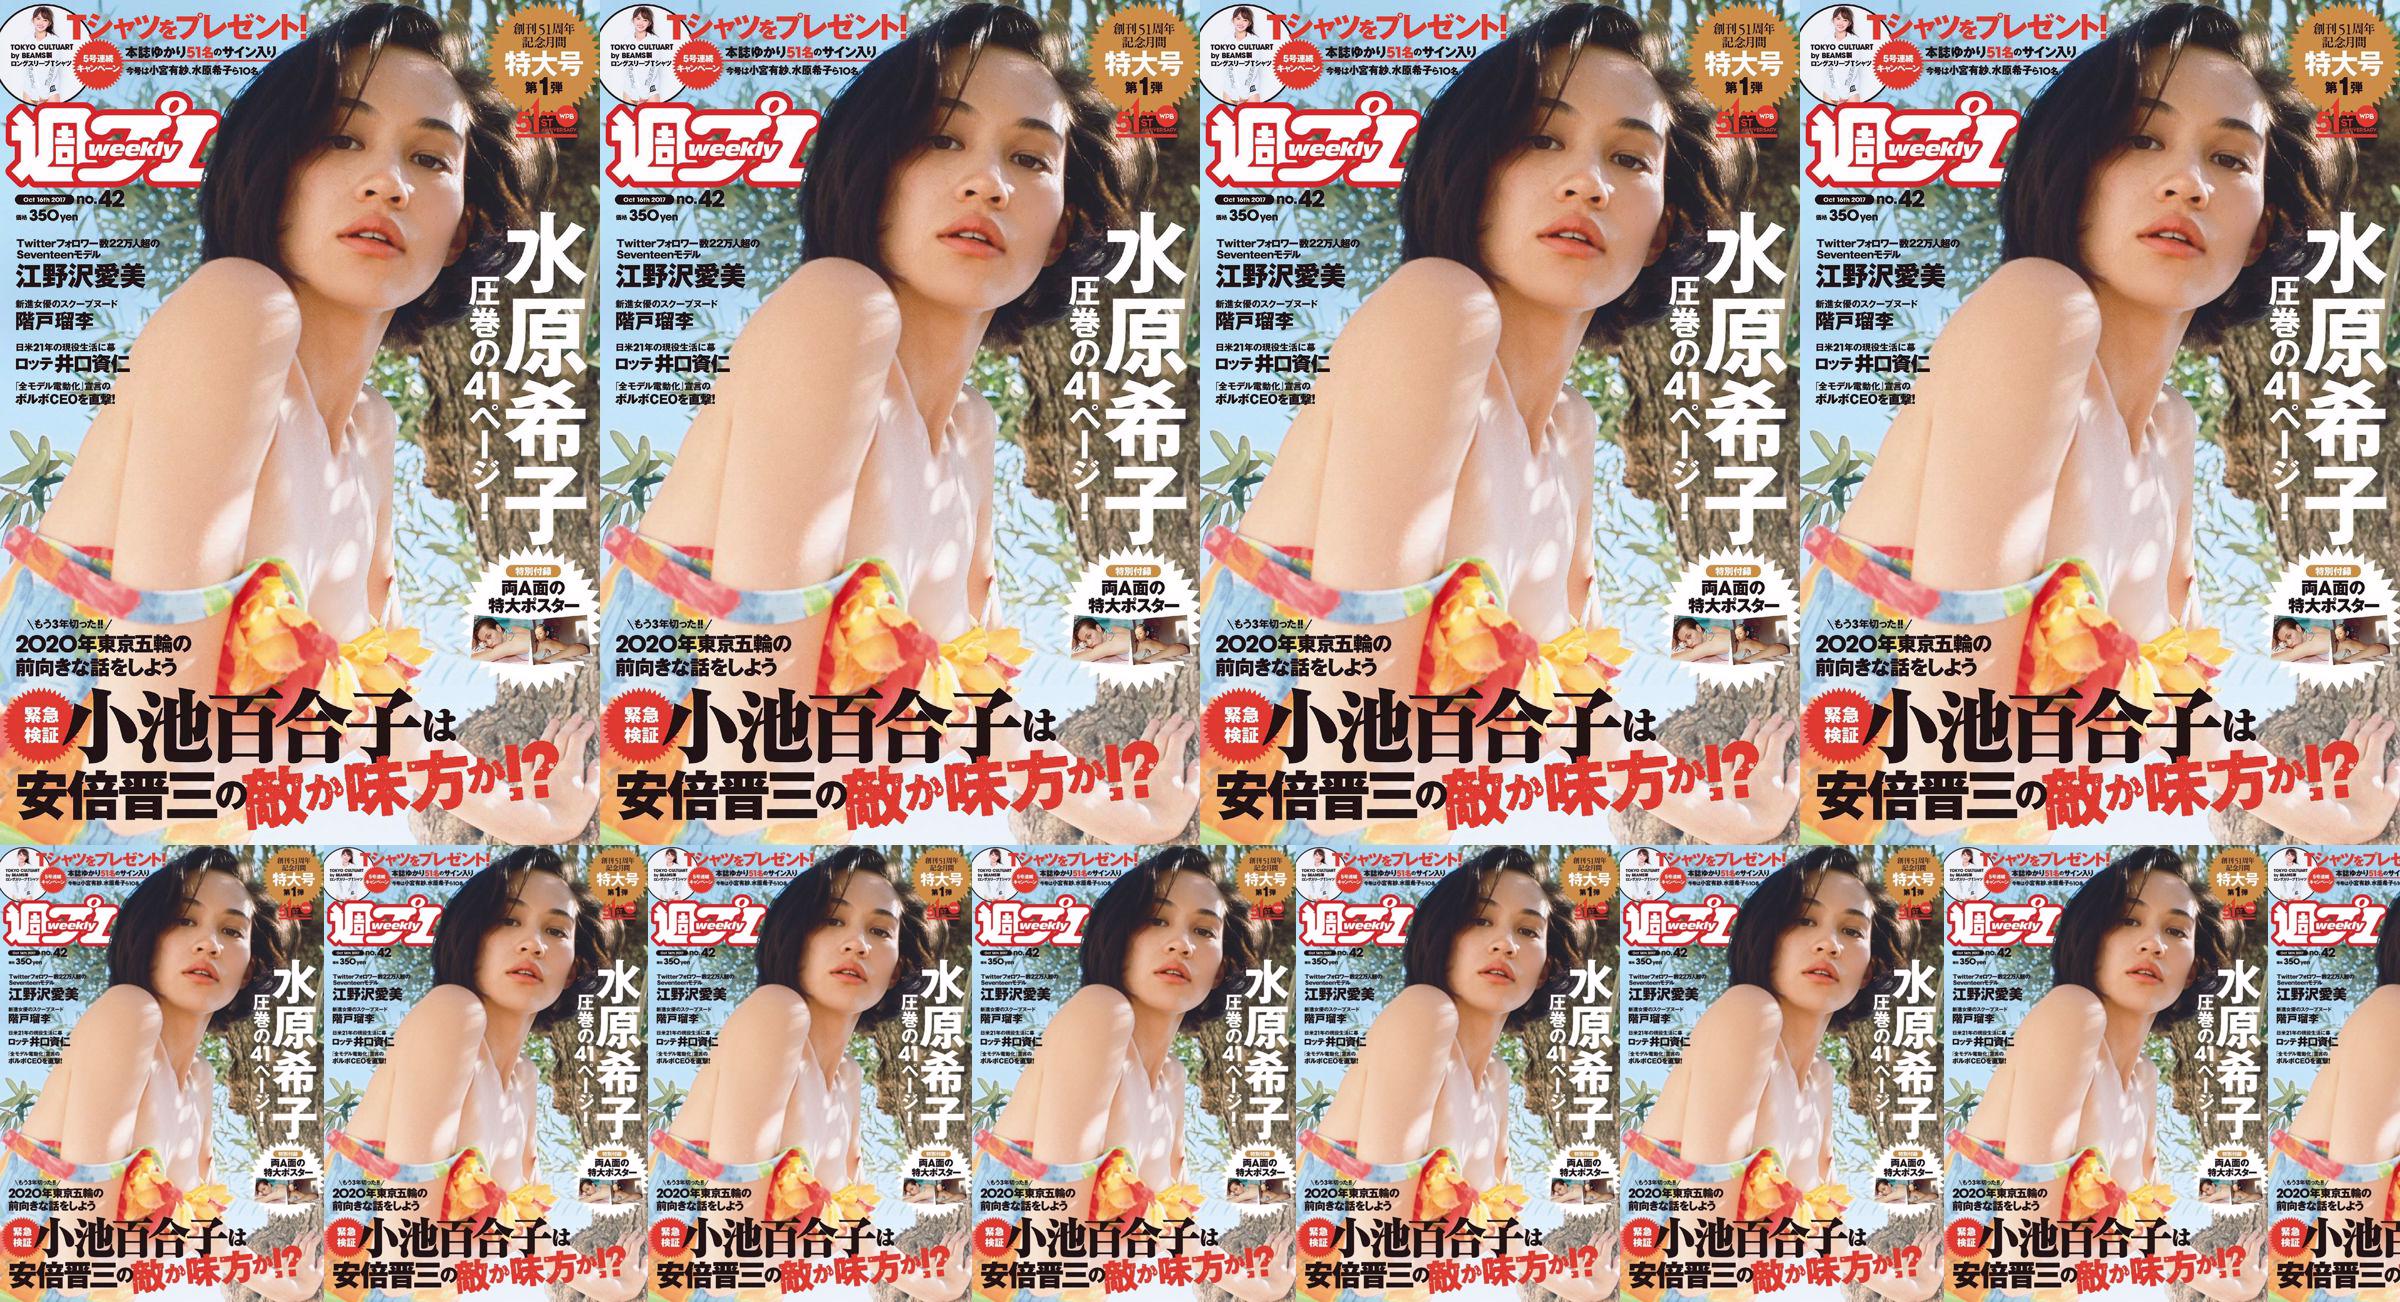 Kiko Mizuhara Manami Enosawa Serina Fukui Miu Nakamura Ruri Shinato [Weekly Playboy] 2017 Majalah Foto No.42 No.3063a3 Halaman 4